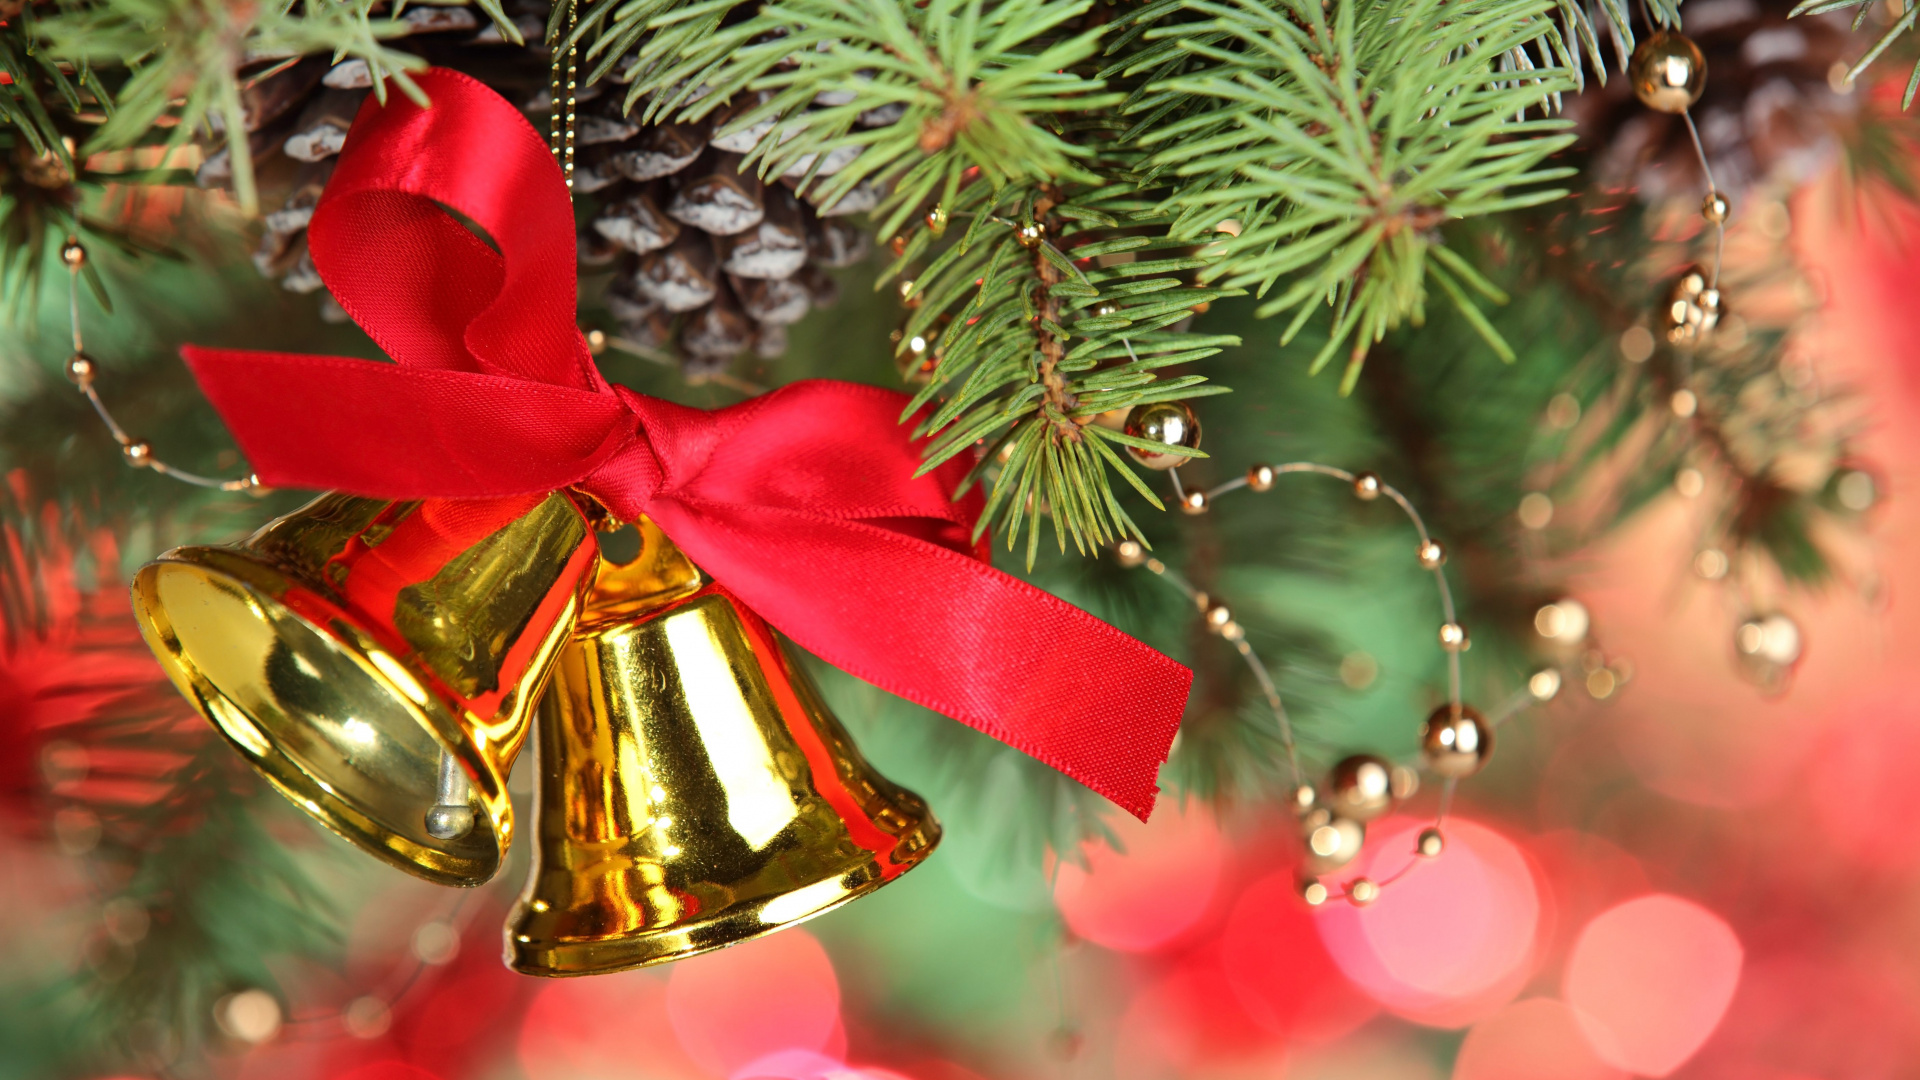 Weihnachtsdekoration, Weihnachten, Jingle Bell, Weihnachtsbaum, Christmas Ornament. Wallpaper in 1920x1080 Resolution